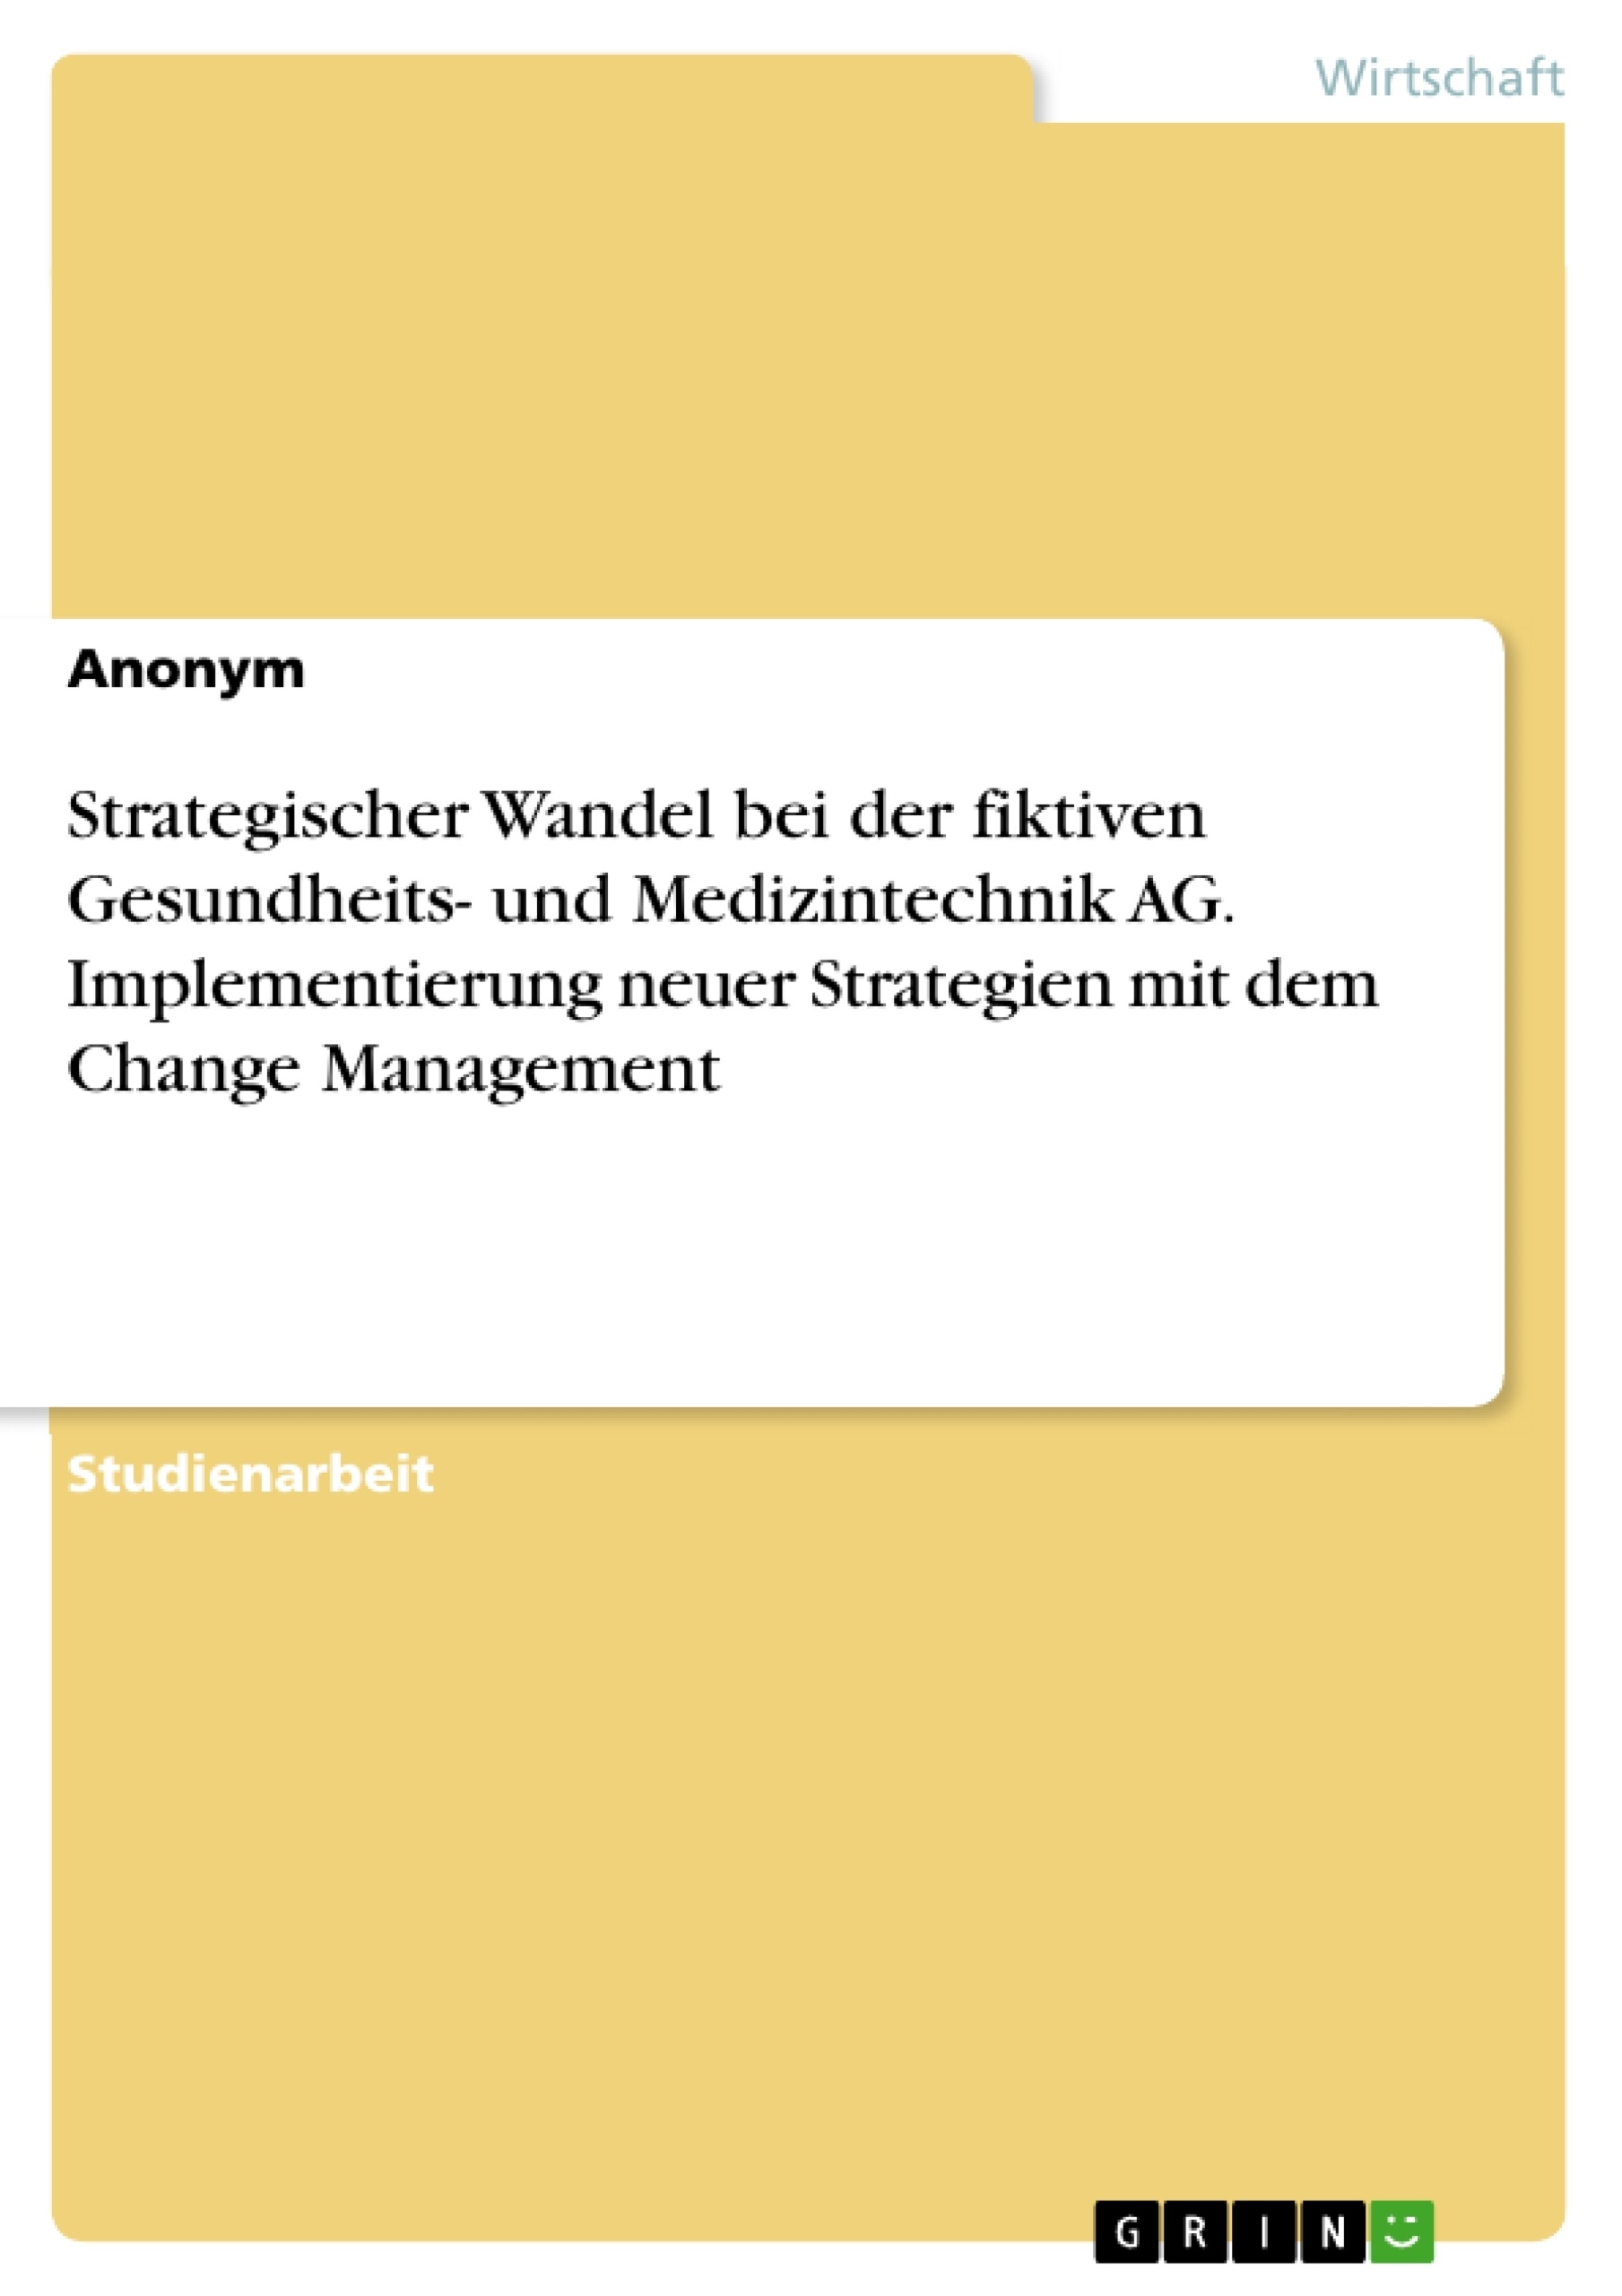 Title: Strategischer Wandel bei der fiktiven Gesundheits- und Medizintechnik AG. Implementierung neuer Strategien mit dem Change Management